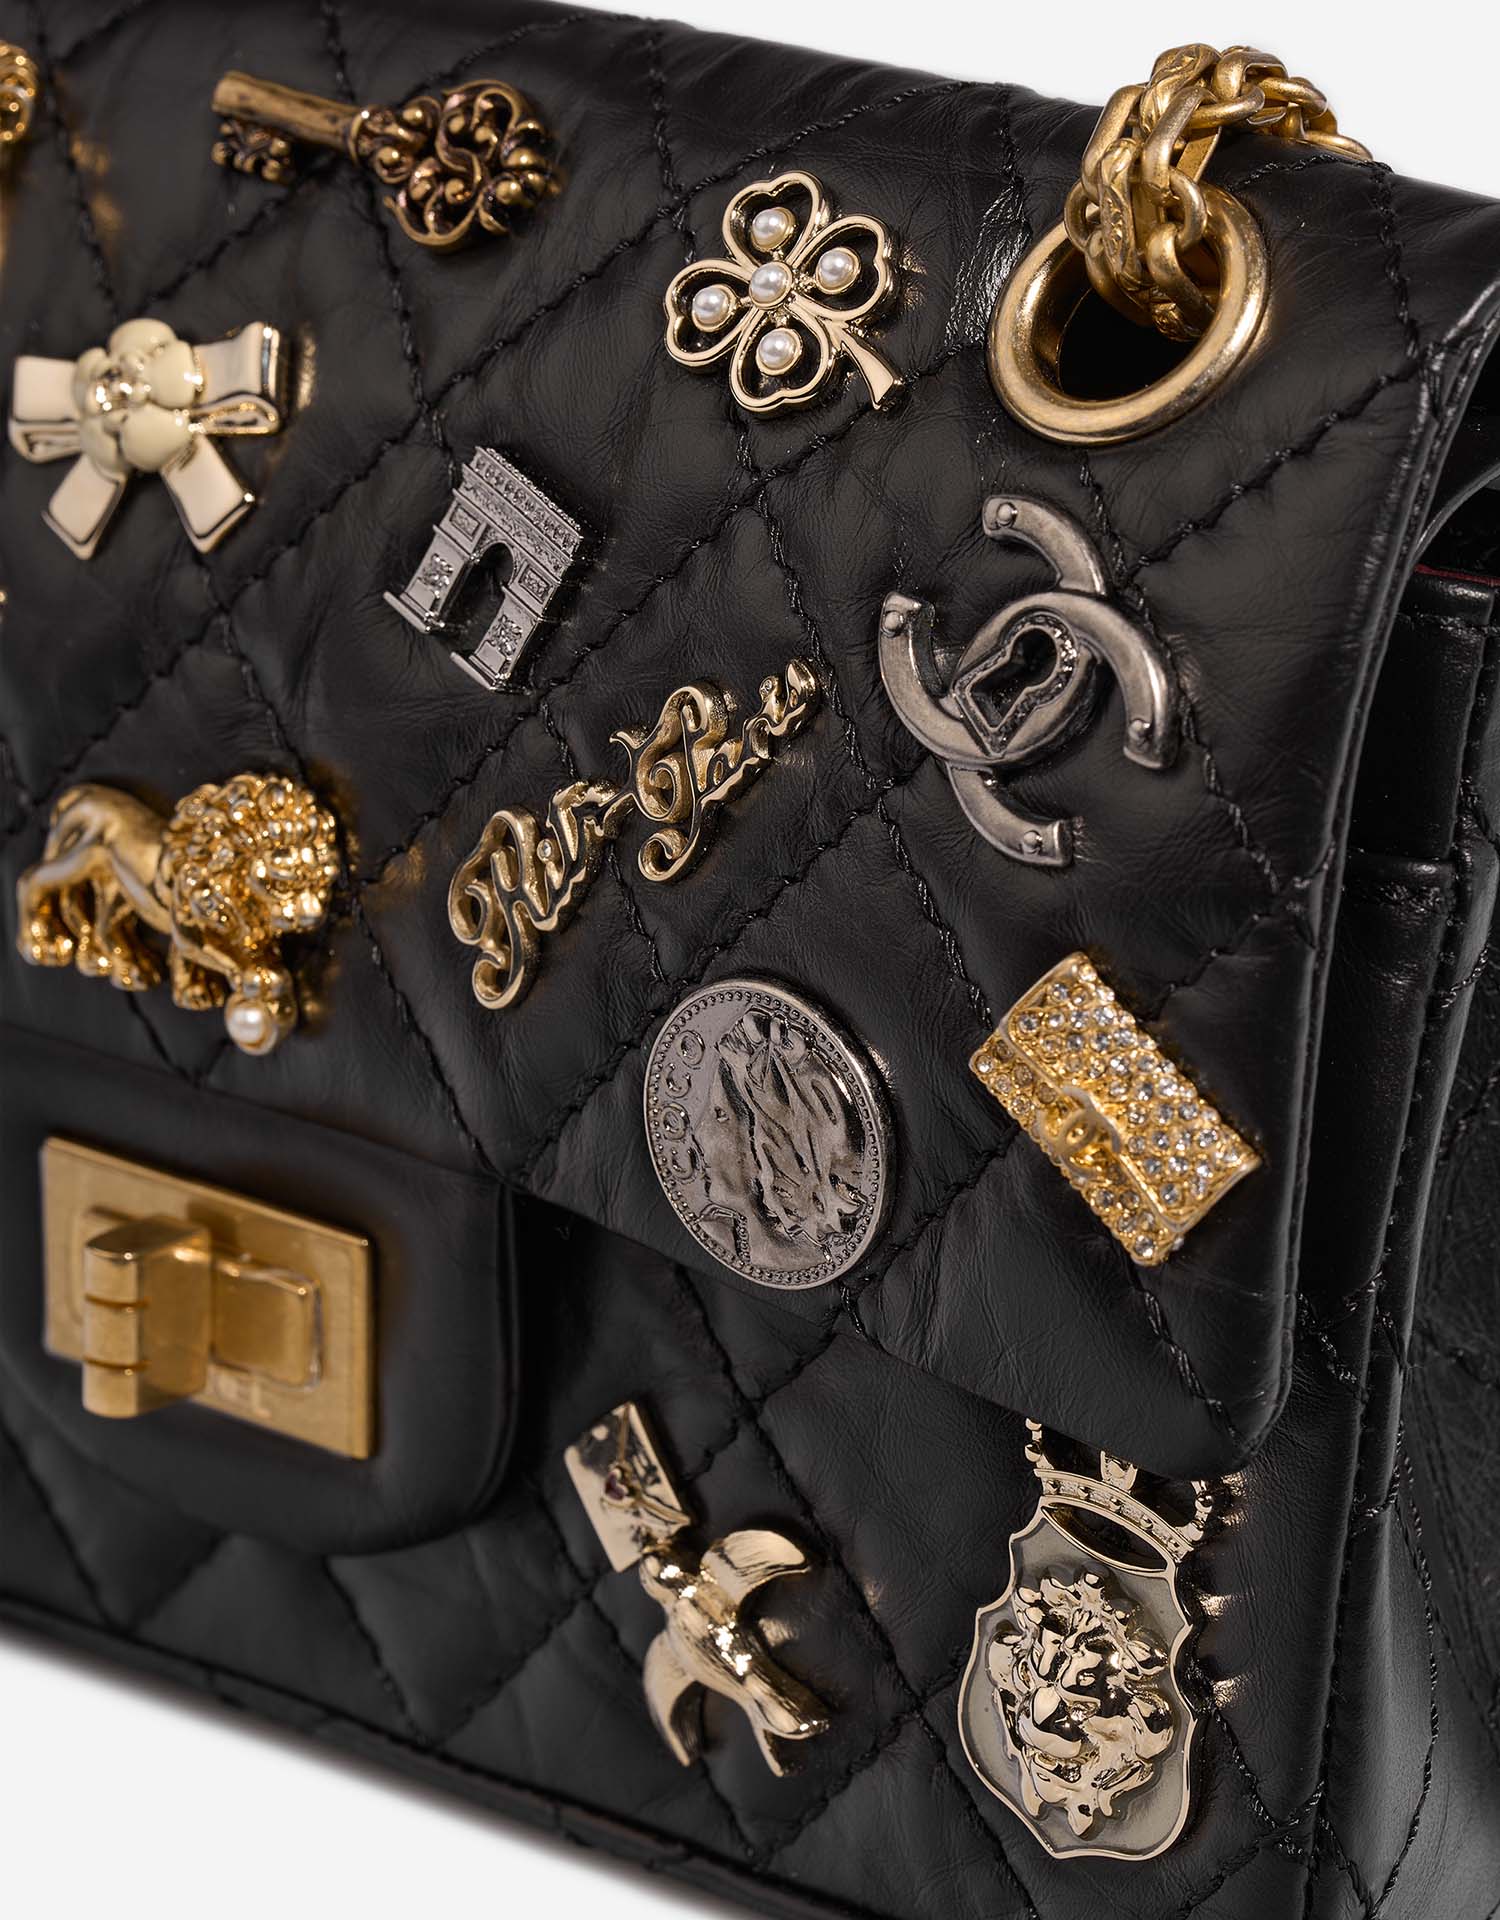 Chanel 255 225 Schwarz Gebrauchsspuren| Verkaufen Sie Ihre Designertasche auf Saclab.com